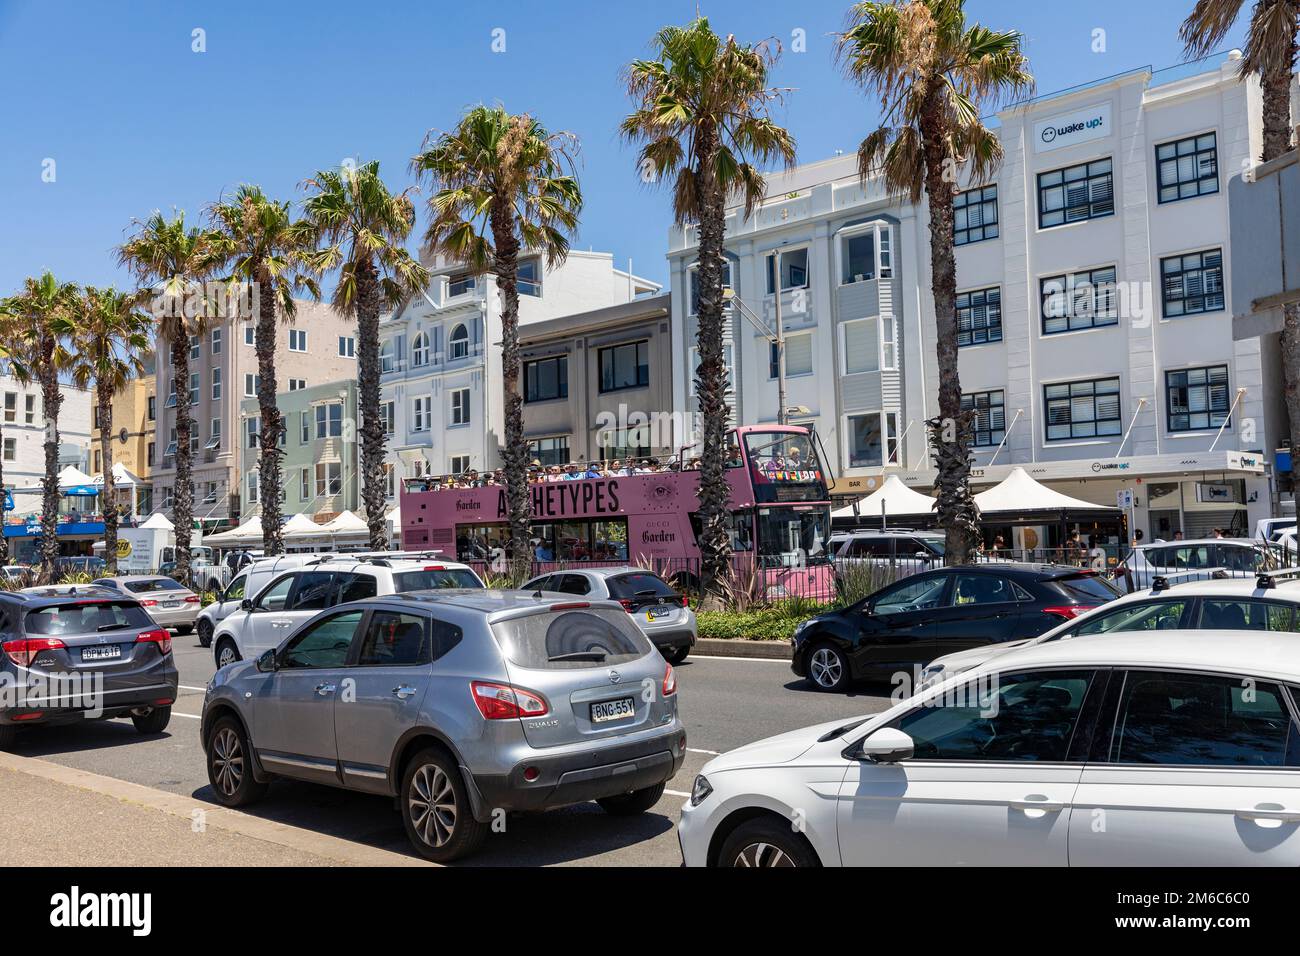 La banlieue de Bondi Beach, les voitures et les véhicules sur campbell Parade Bondi avec des palmiers imposants, Sydney, Nouvelle-Galles du Sud, Australie Banque D'Images